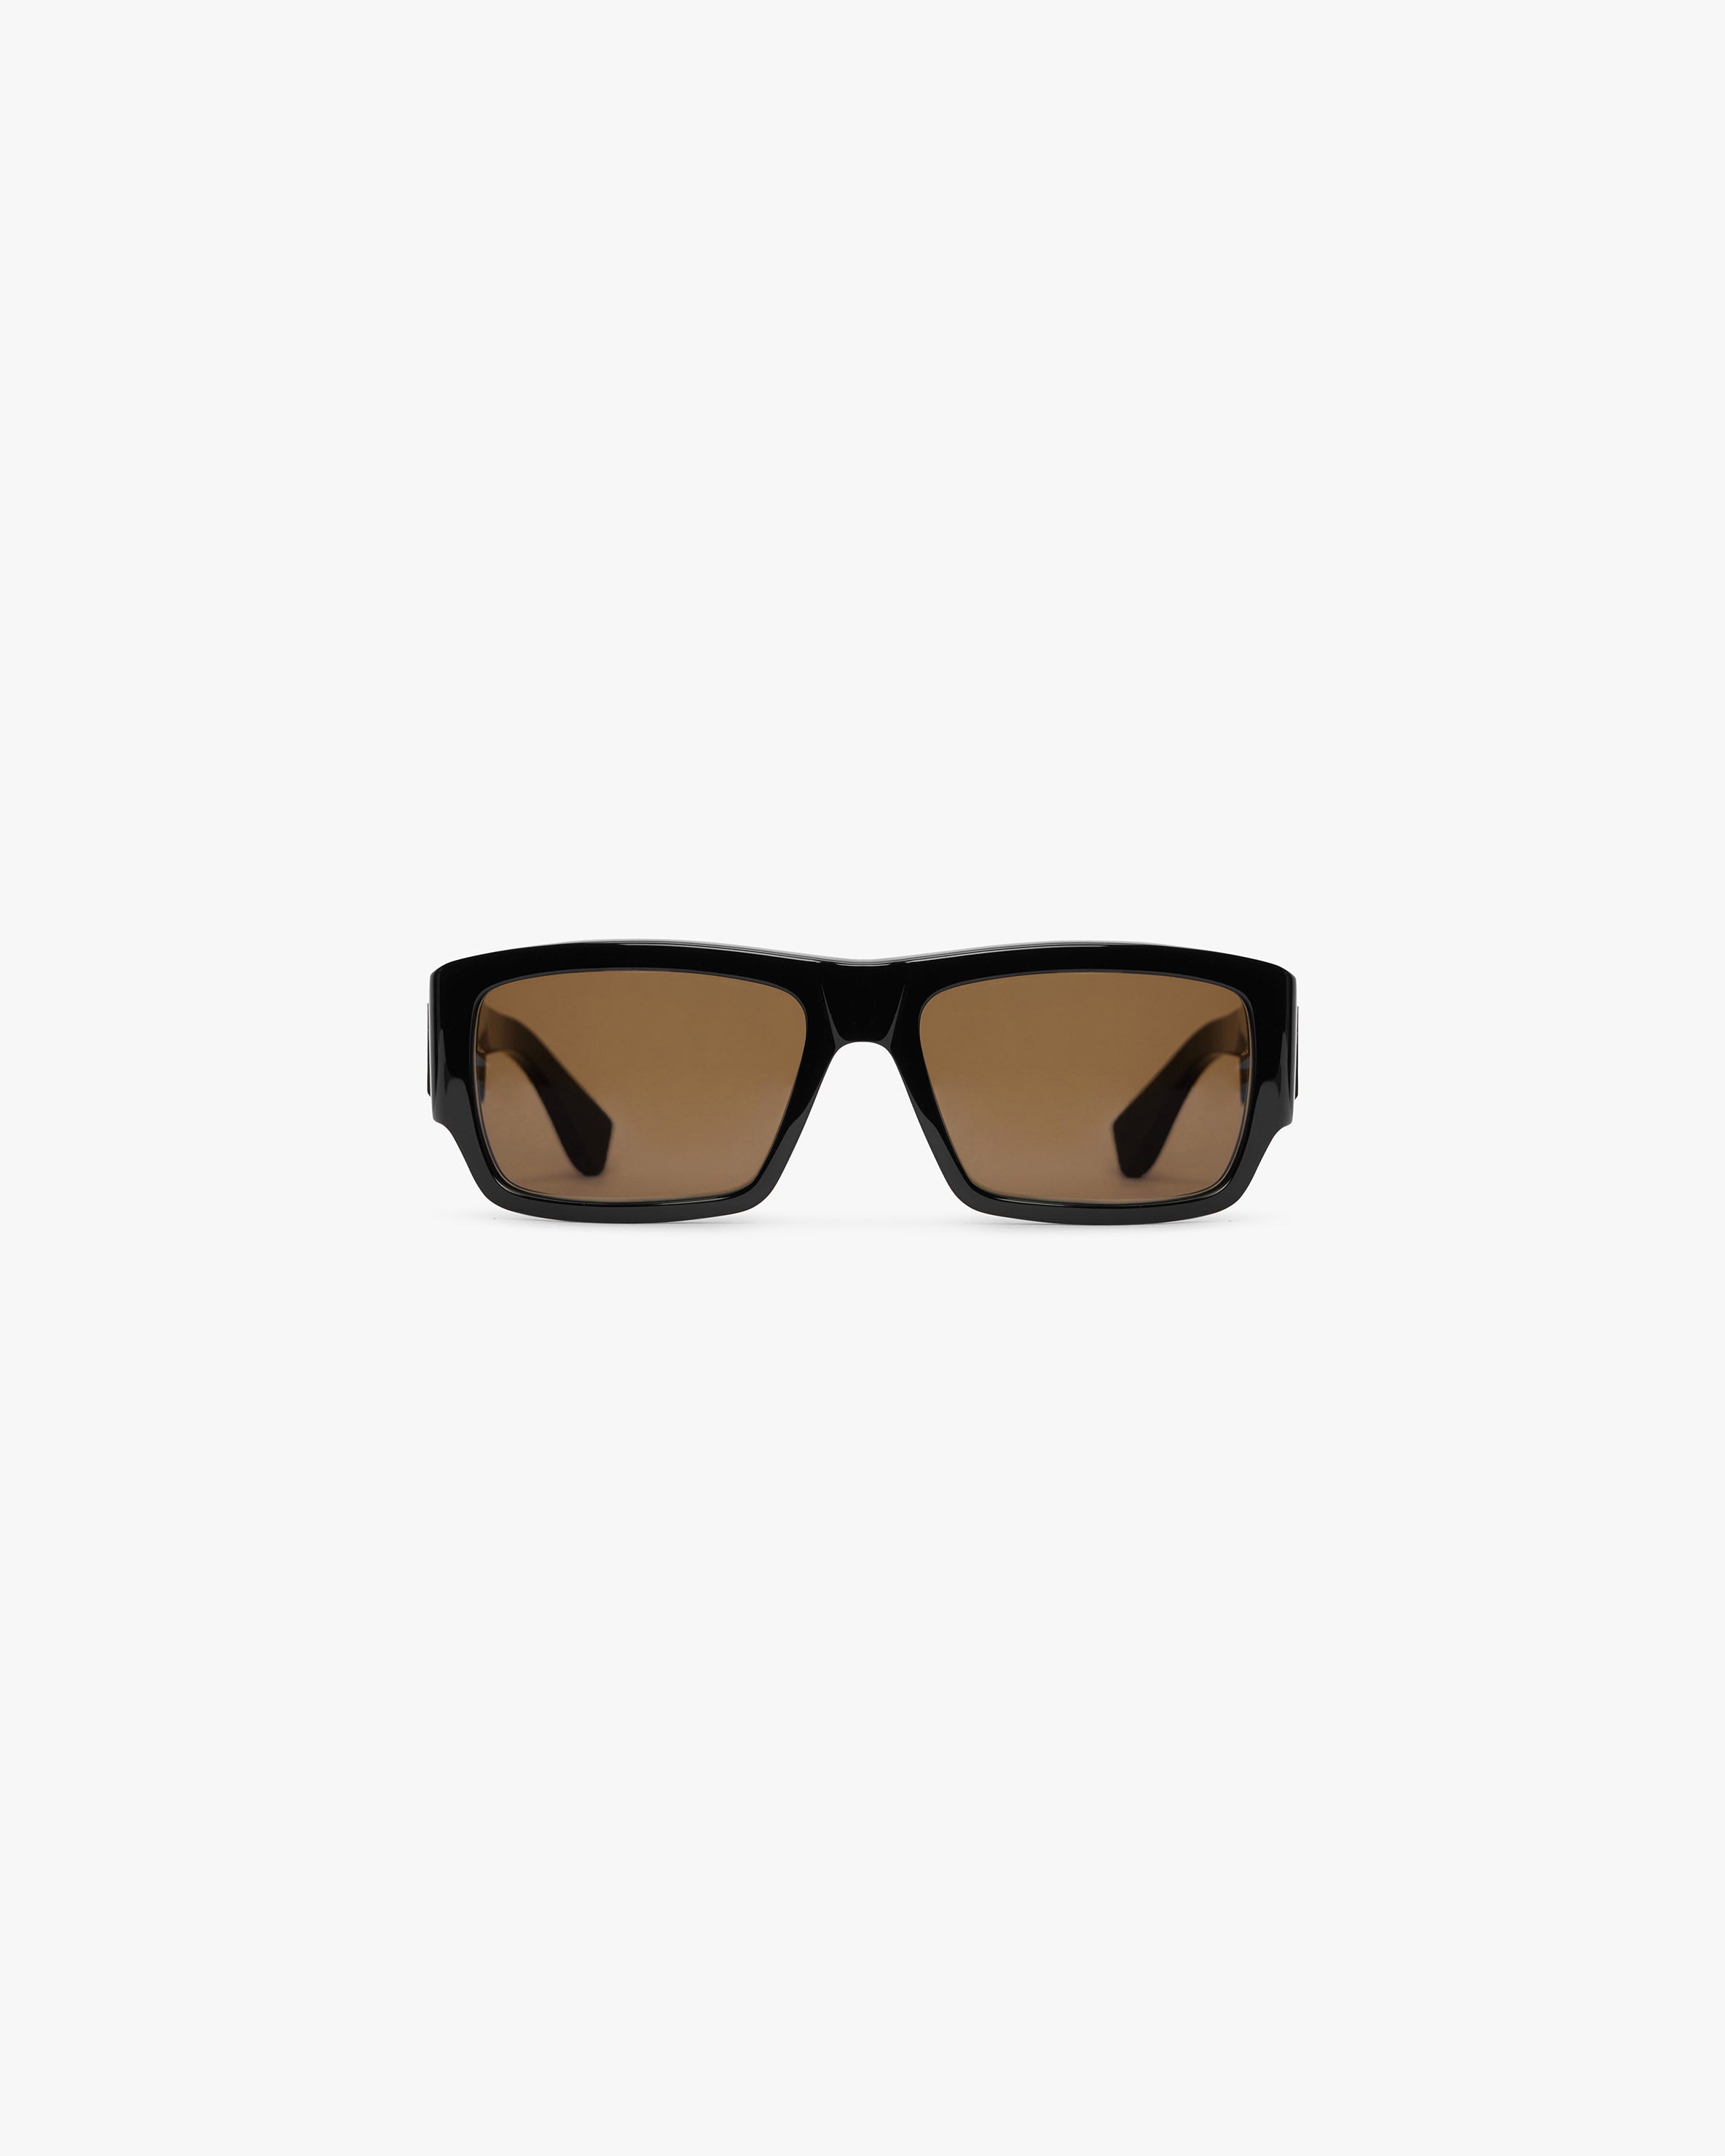 Initial Sunglasses - Black Brown